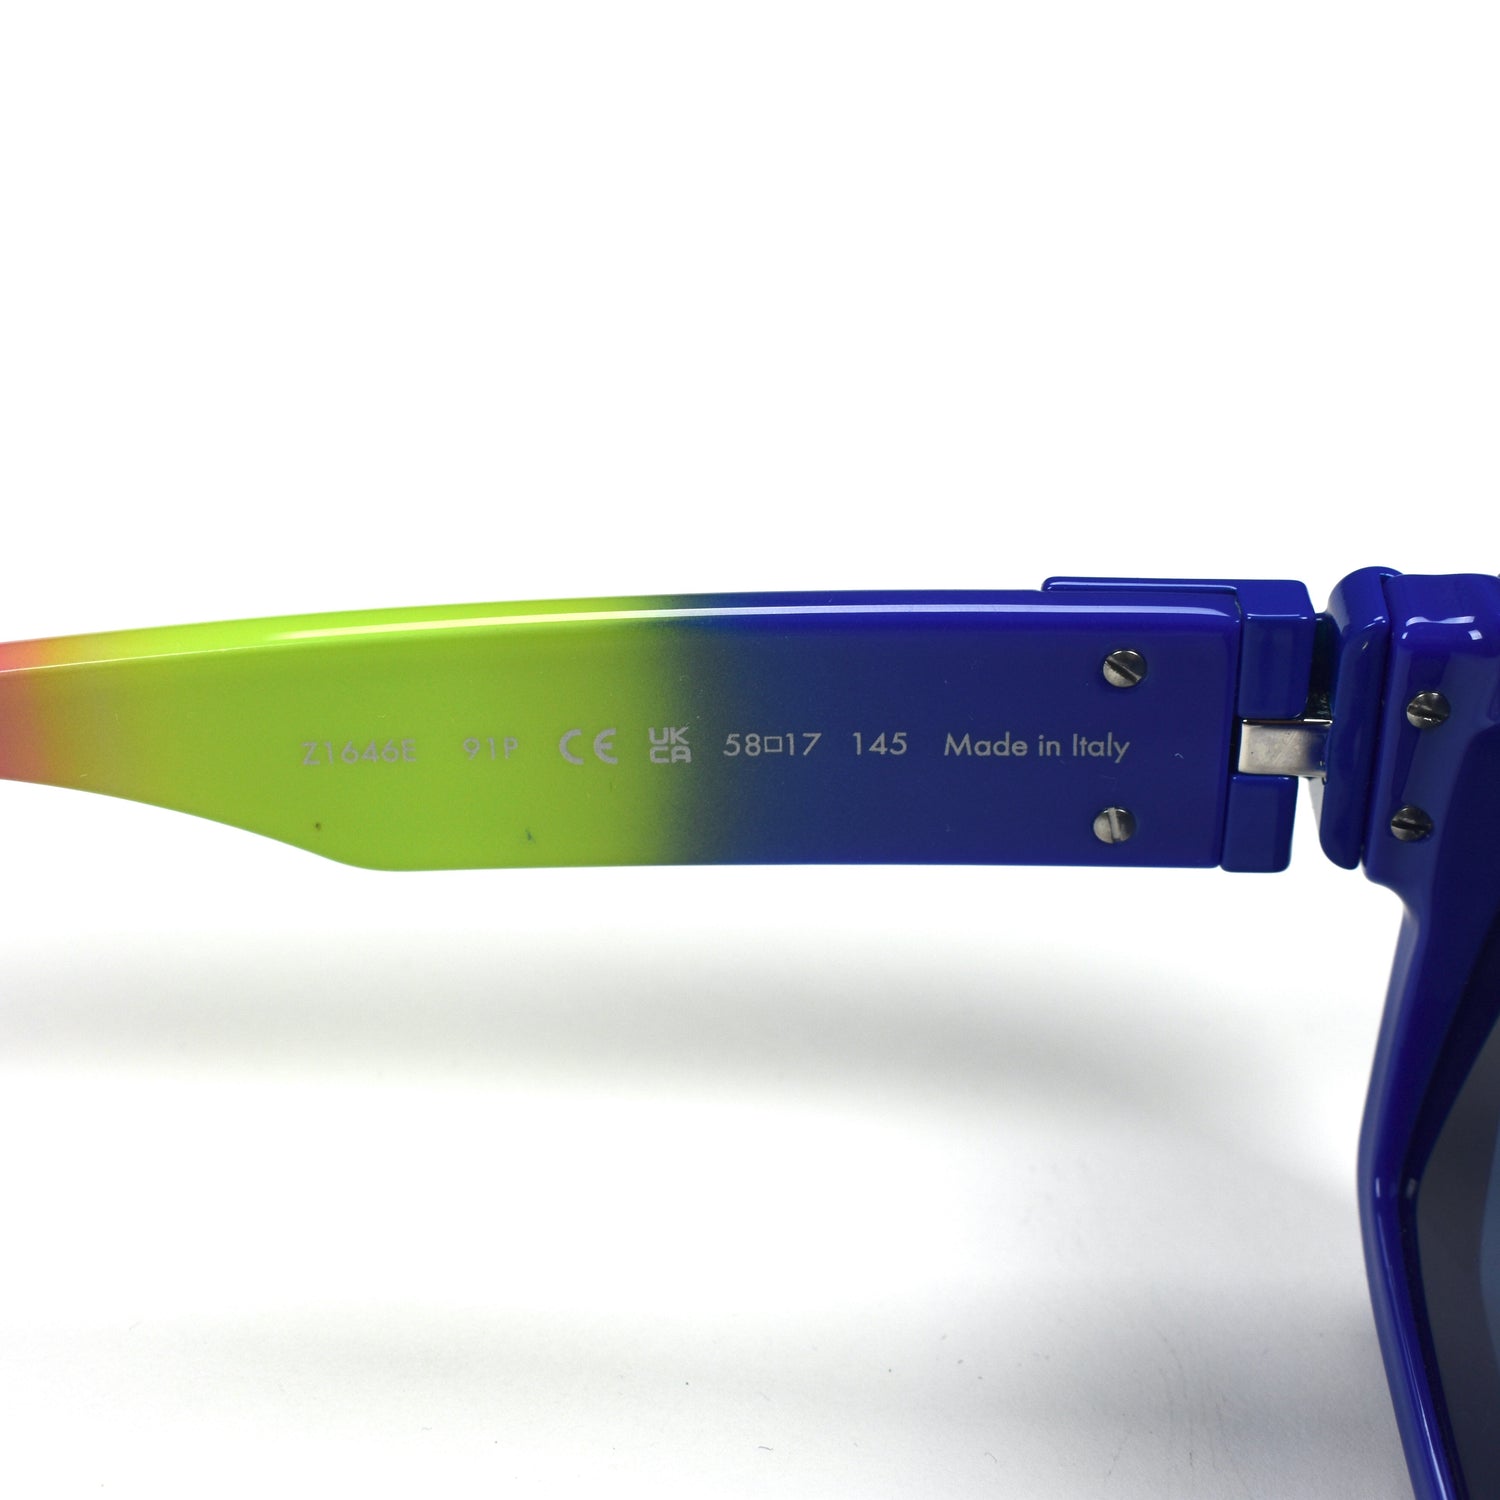 Louis Vuitton x Virgil Abloh Millionaire Sun Glasses 'Blue/Green/Pink